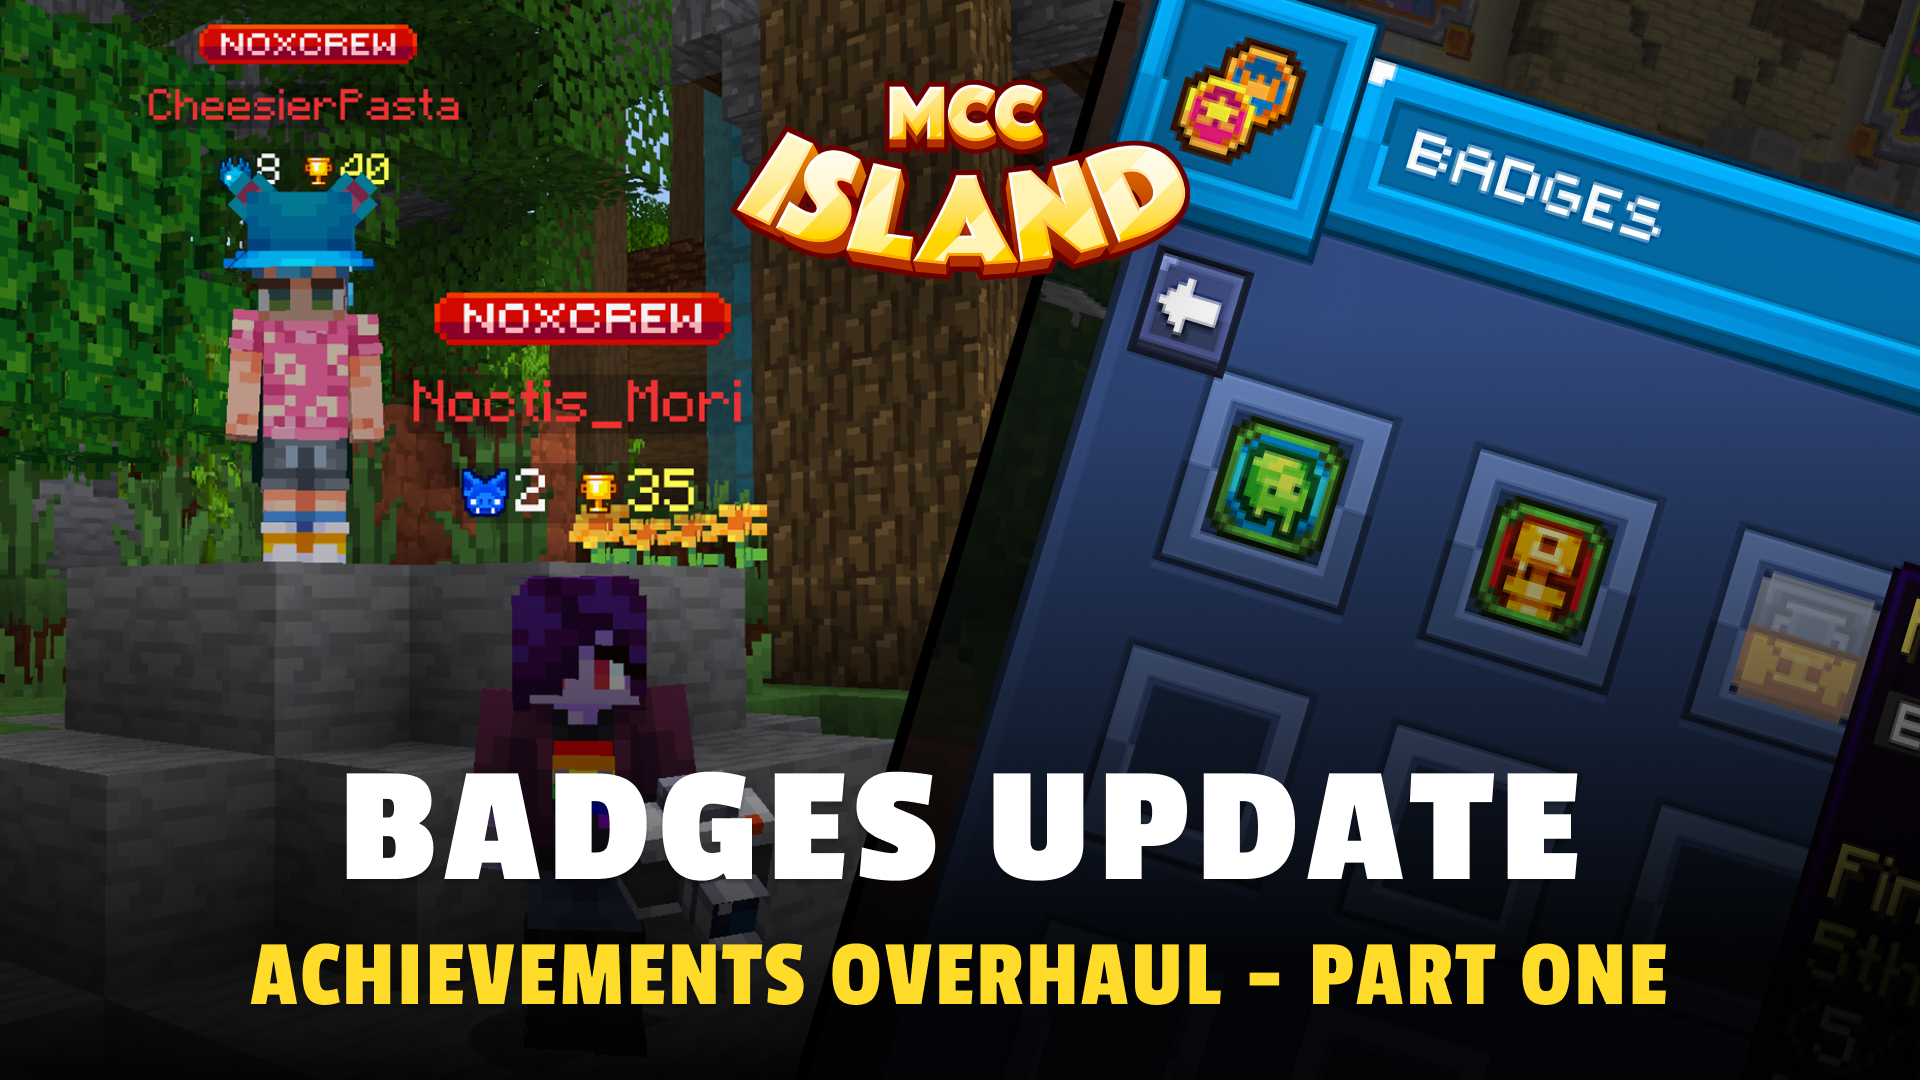 Badges Update